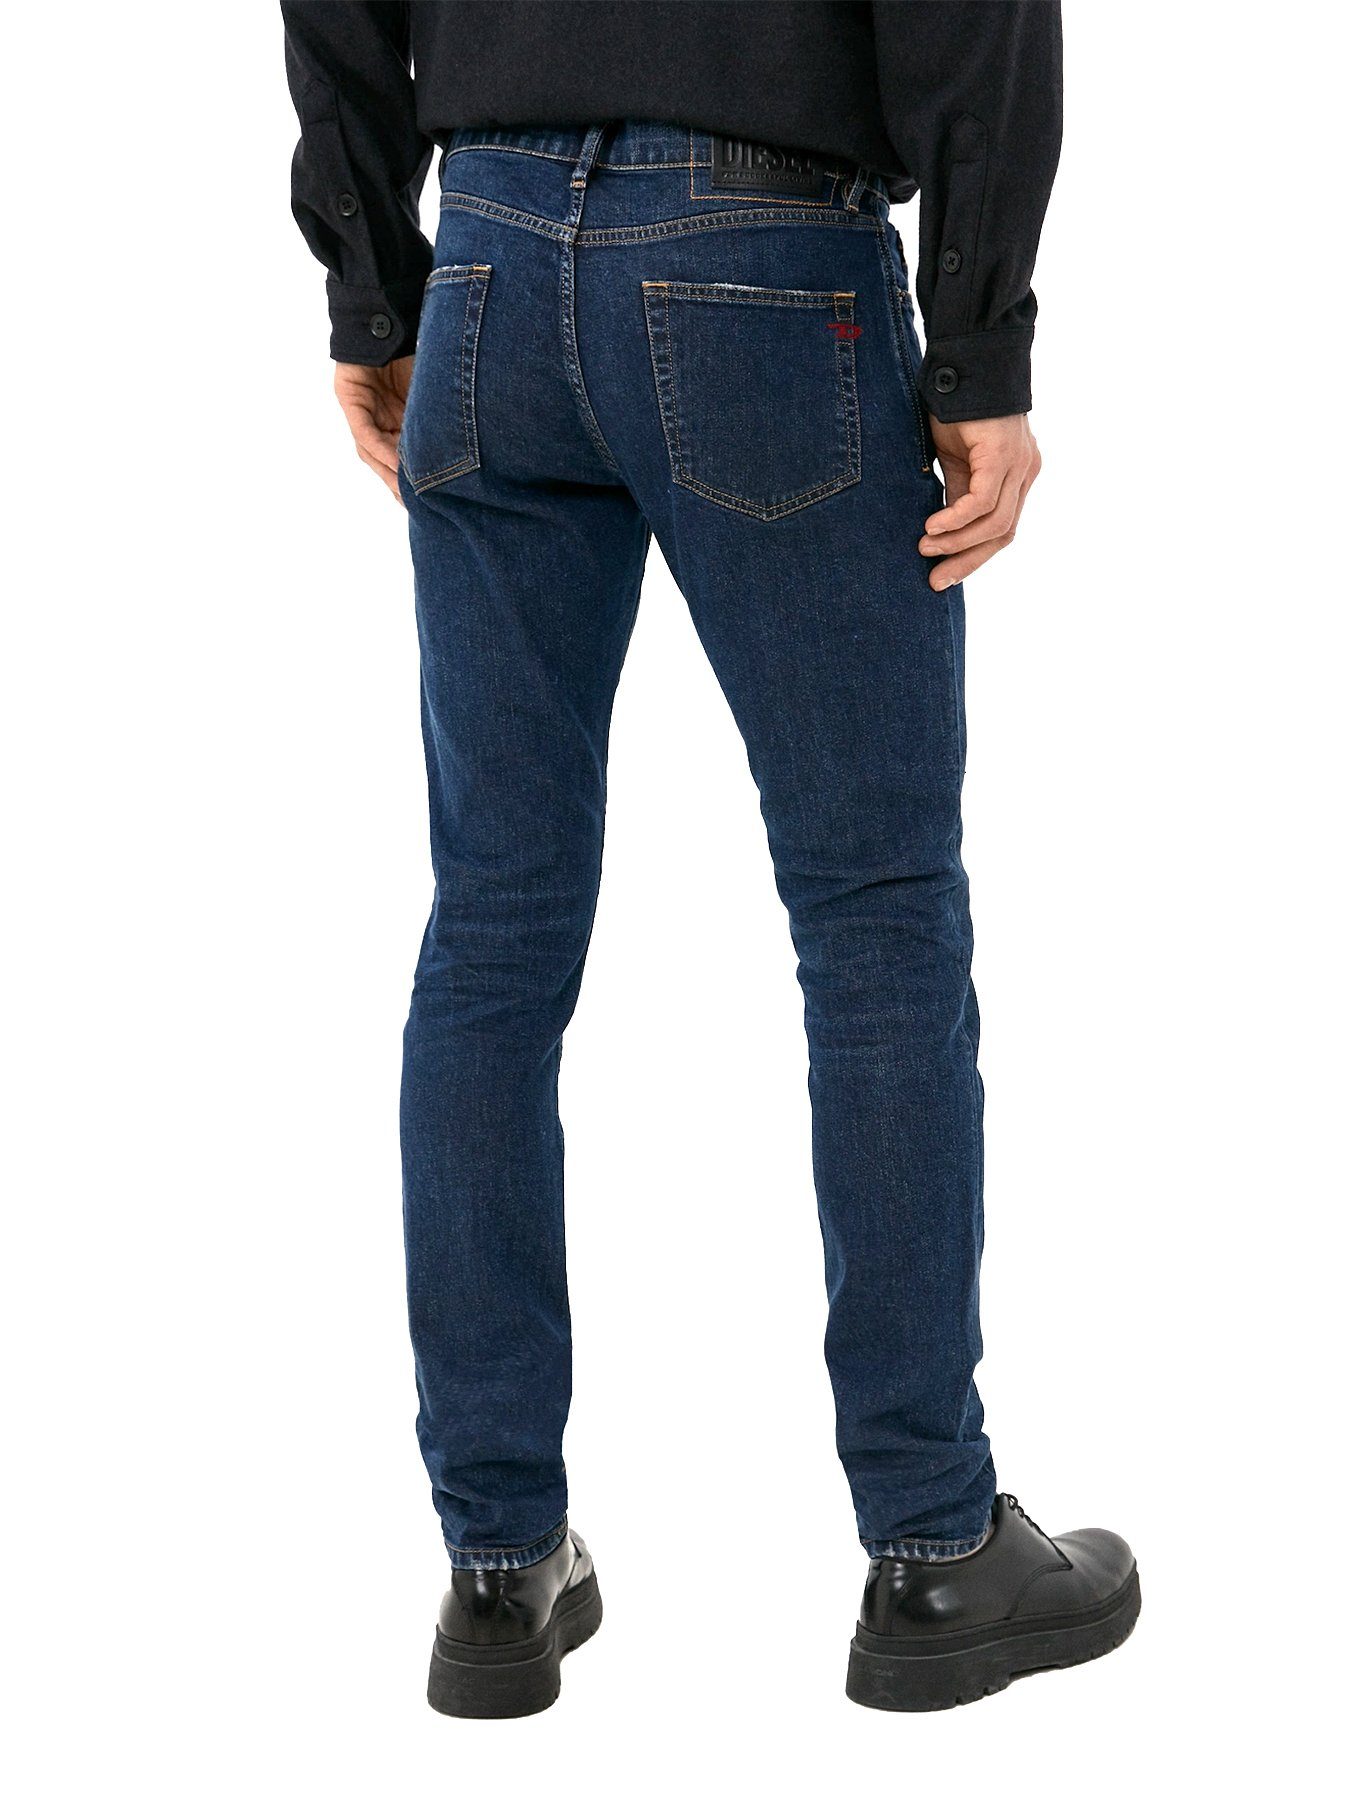 009NV - Diesel - Länge:34 Slim-fit-Jeans Hose Stretch D-Strukt Blau